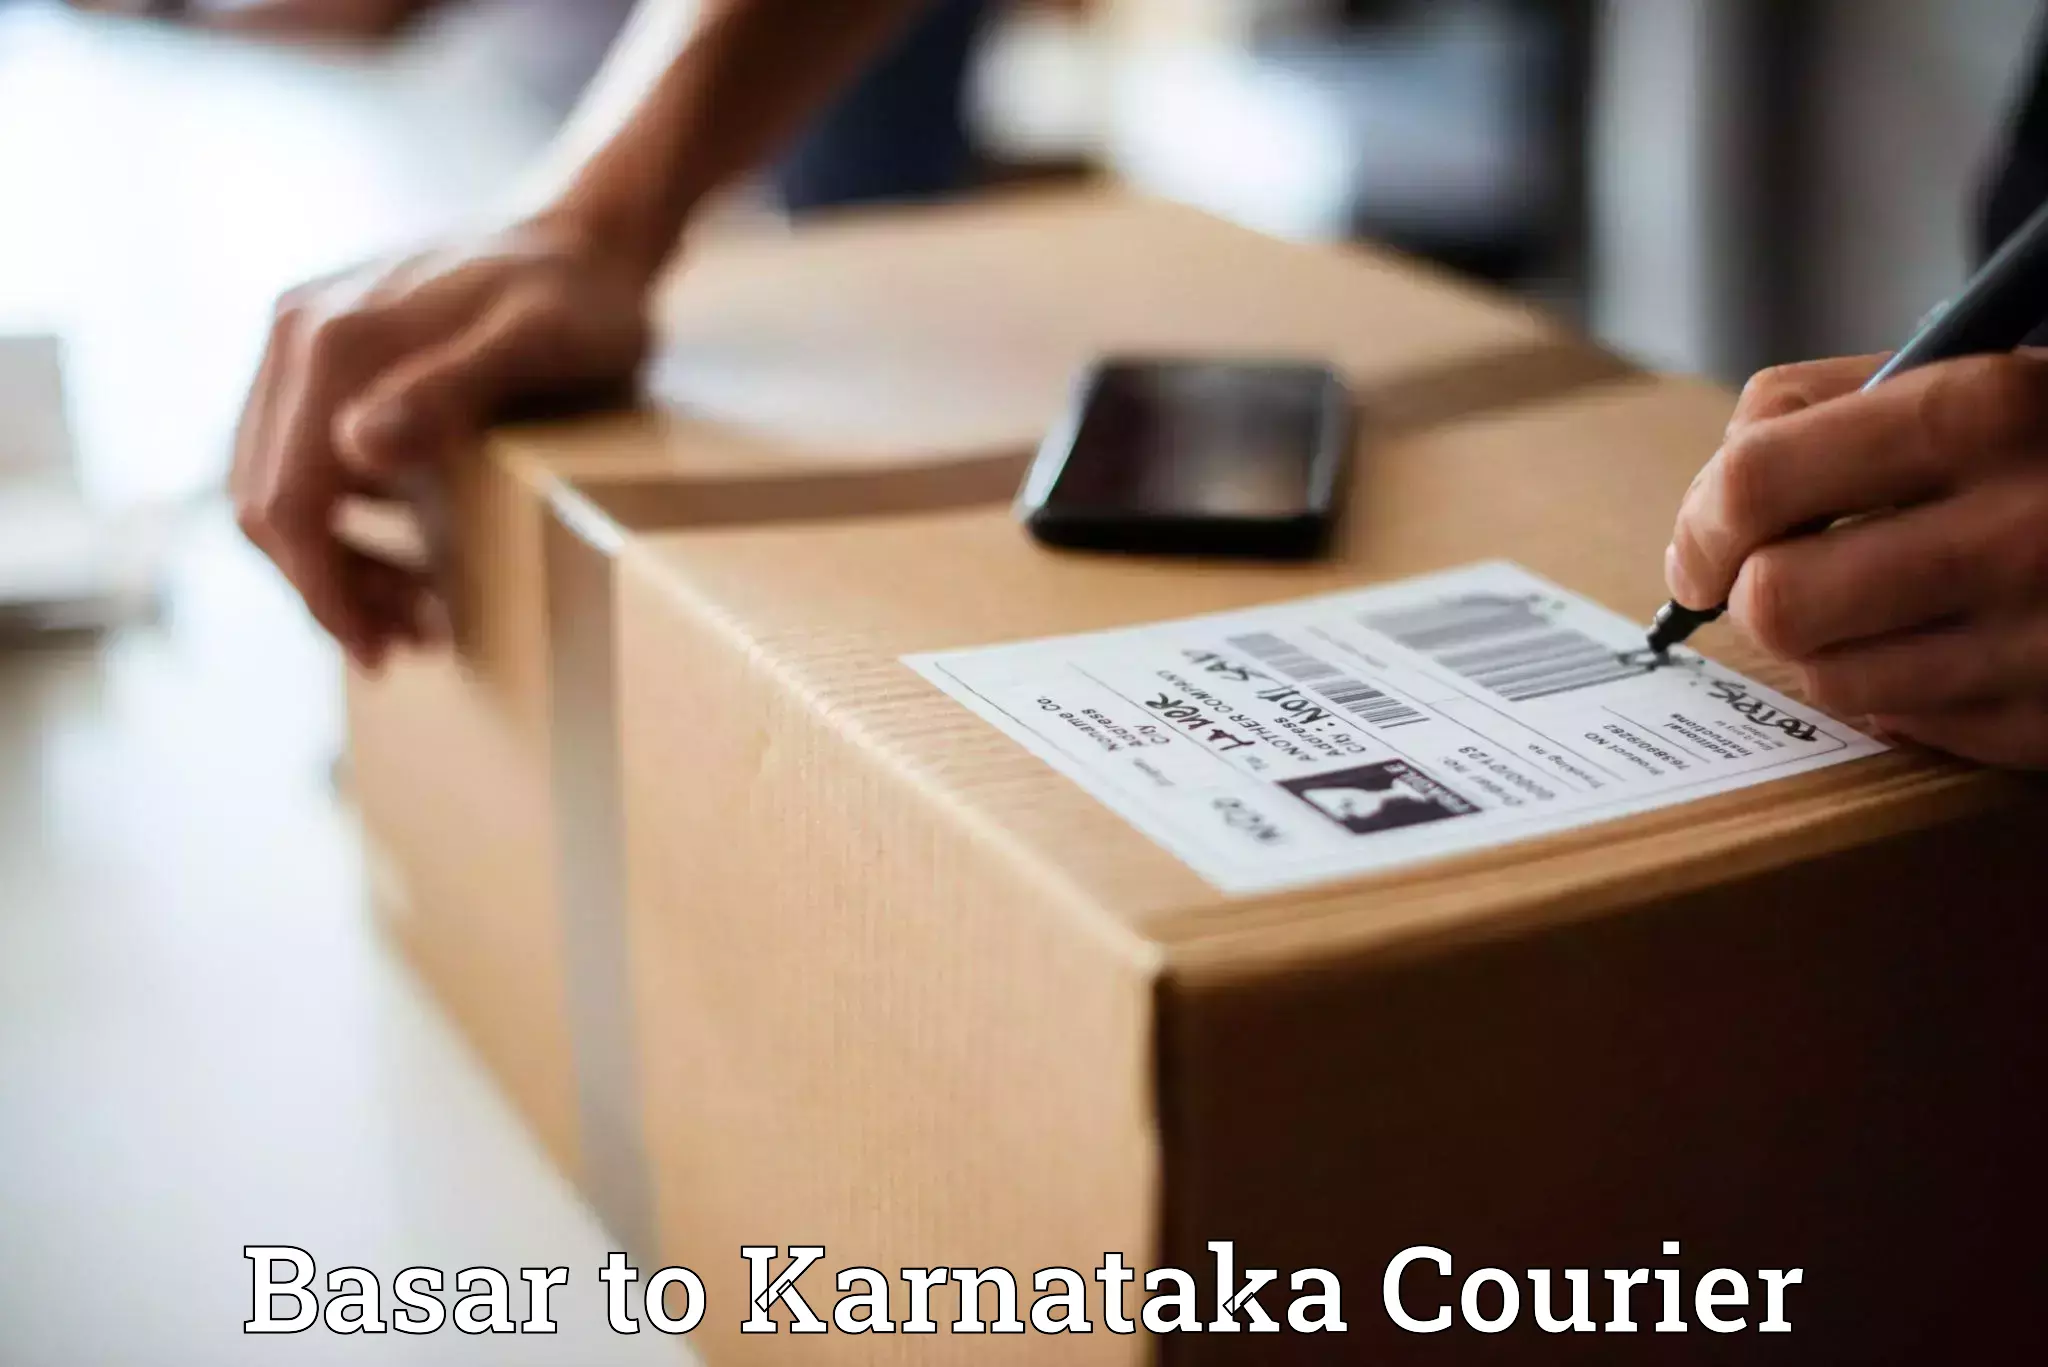 Modern courier technology Basar to Karnataka